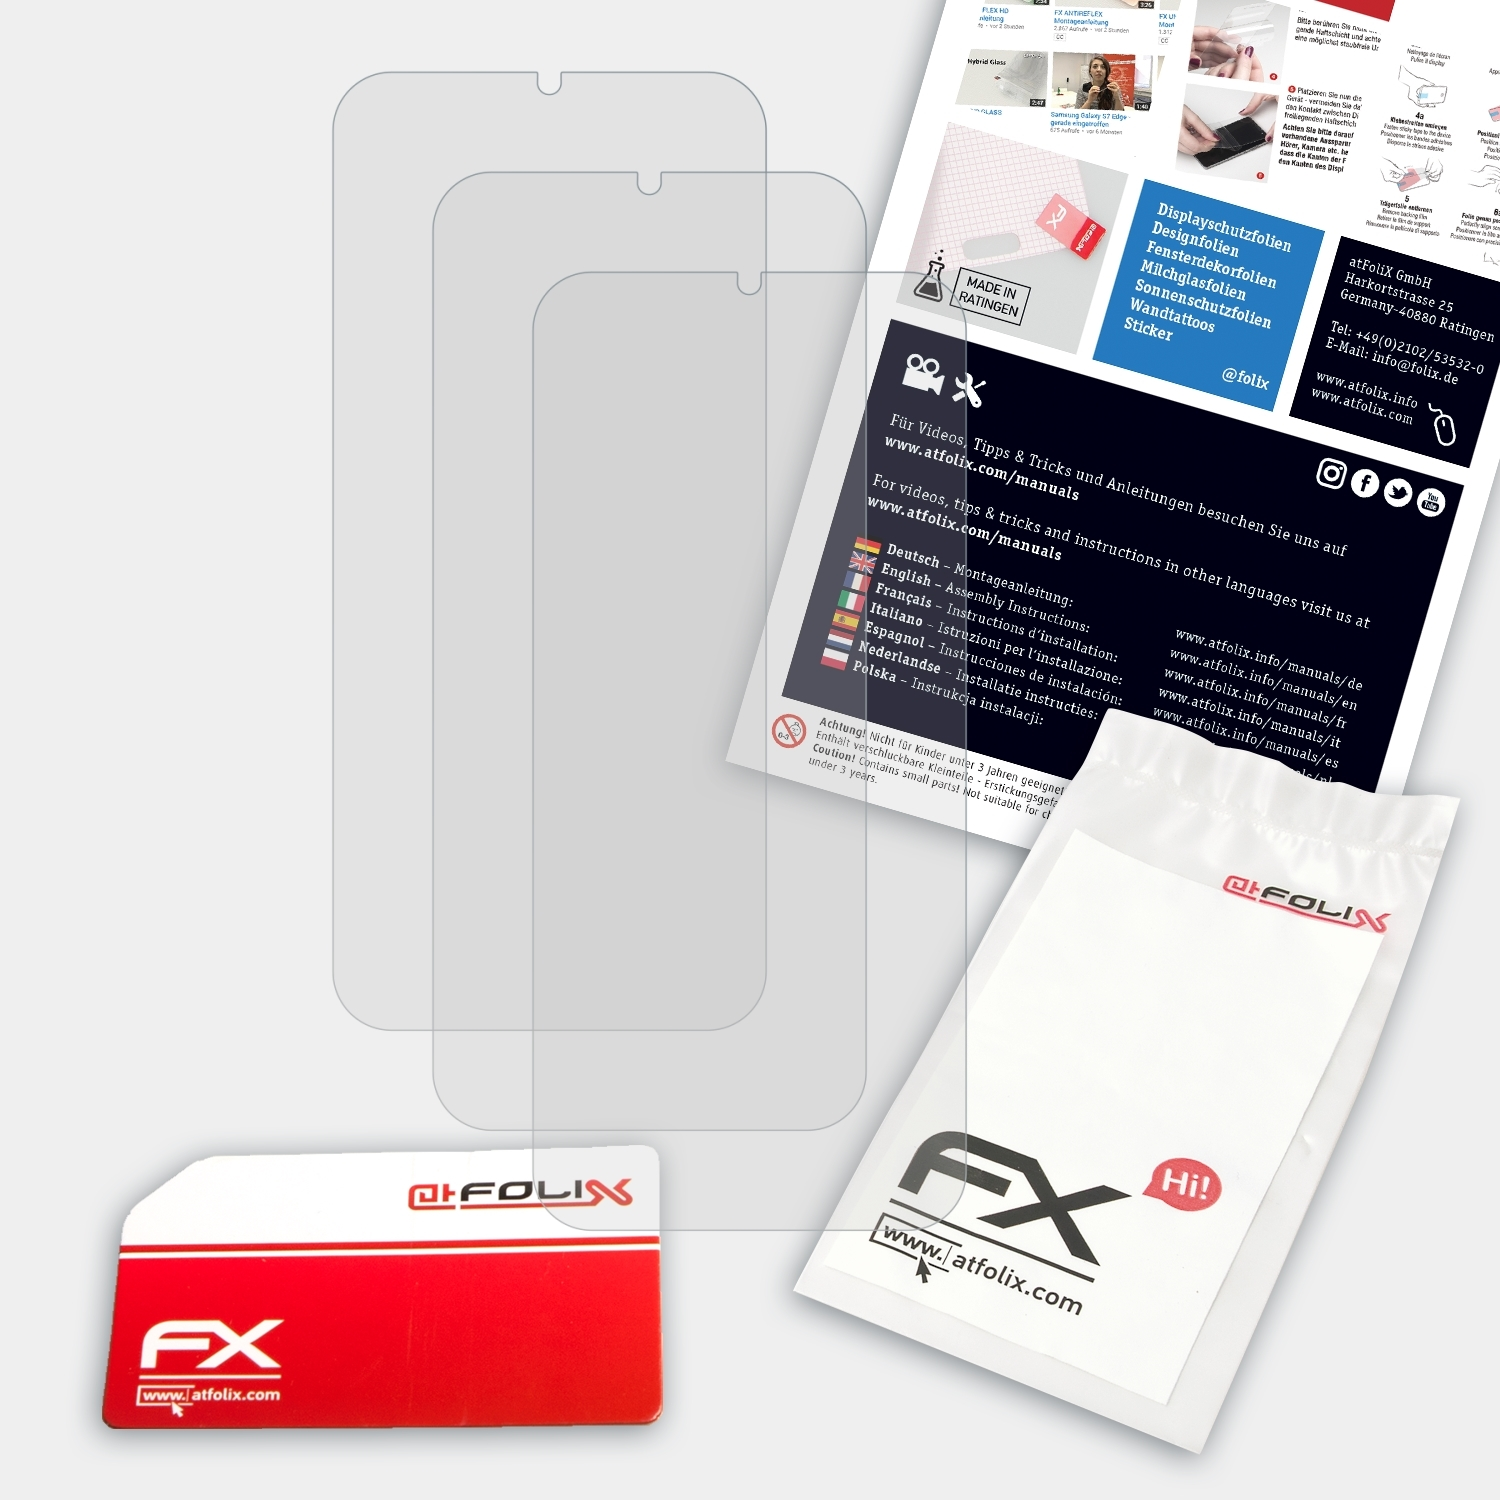 ATFOLIX 3x FX-Antireflex Displayschutz(für Huawei Nova Lite 3)